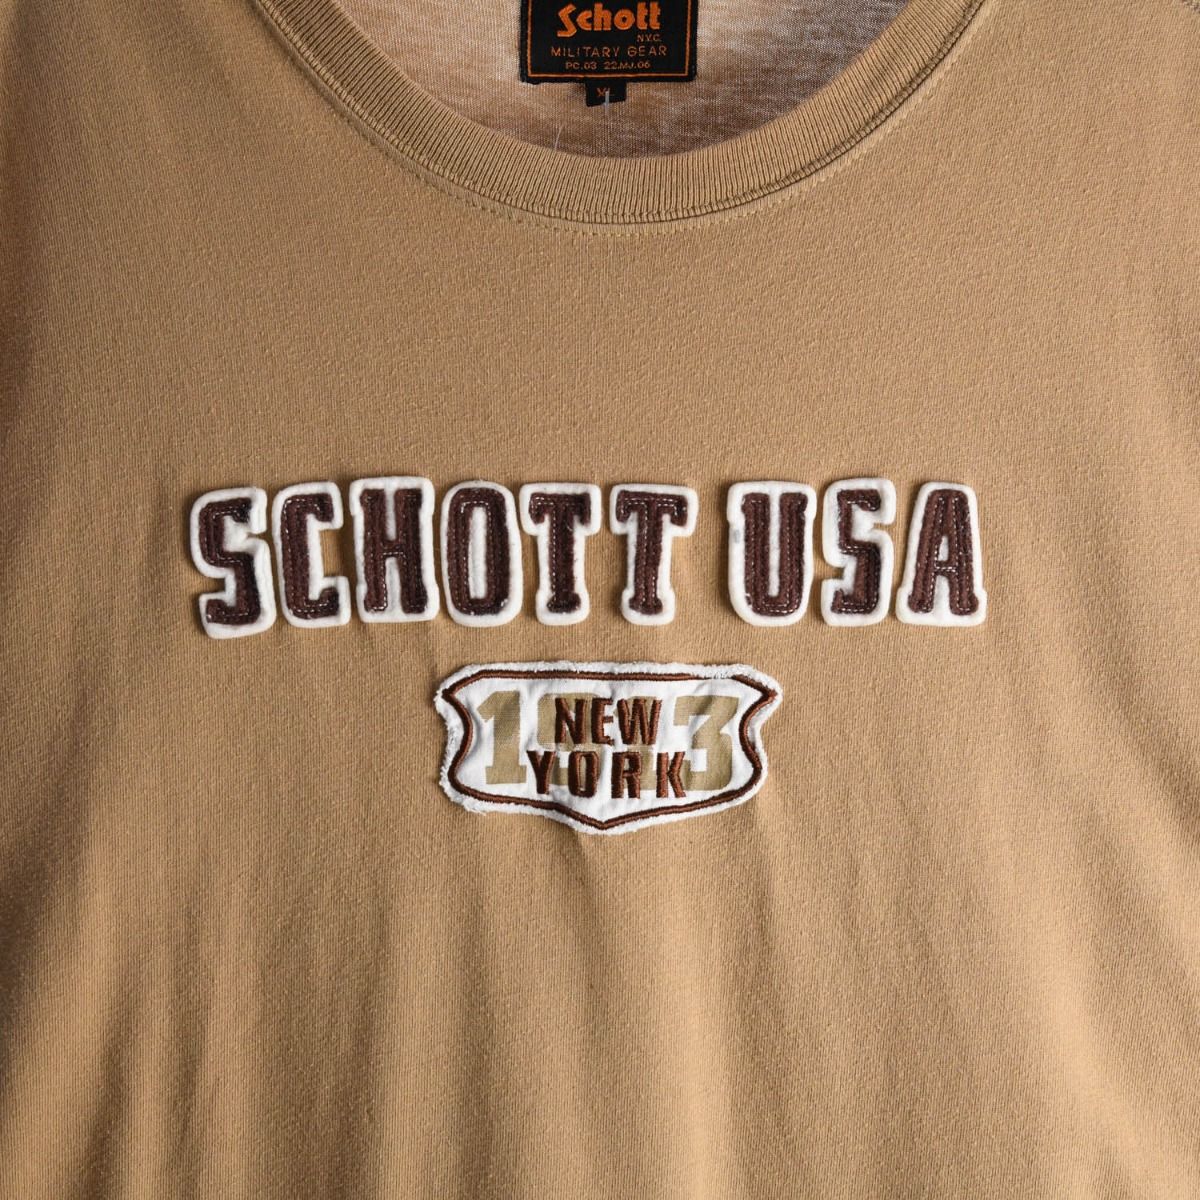 Schott T-Shirt